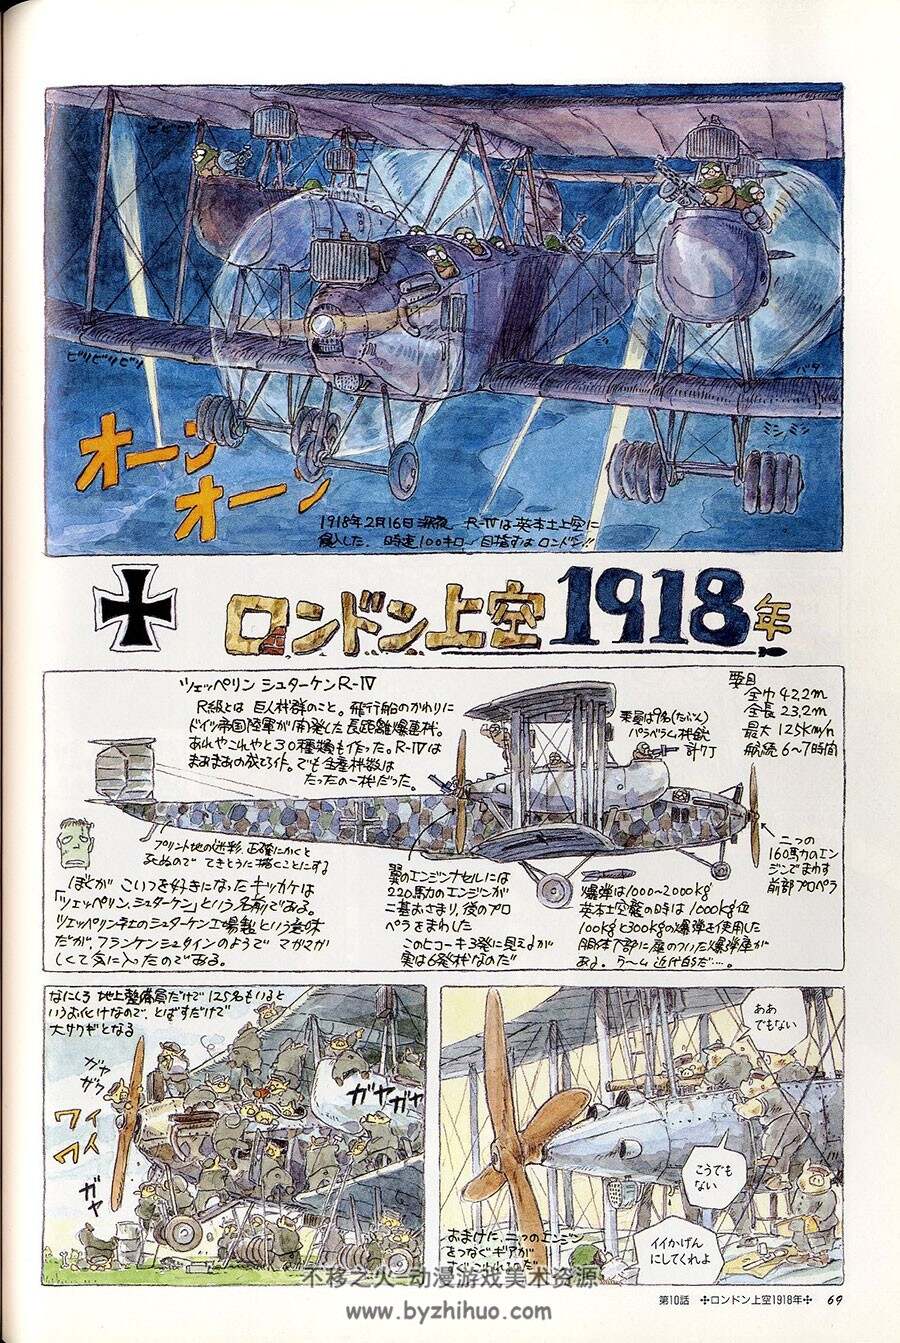 宫崎骏作品 幻想机械装备绘本 设定资料画集下载